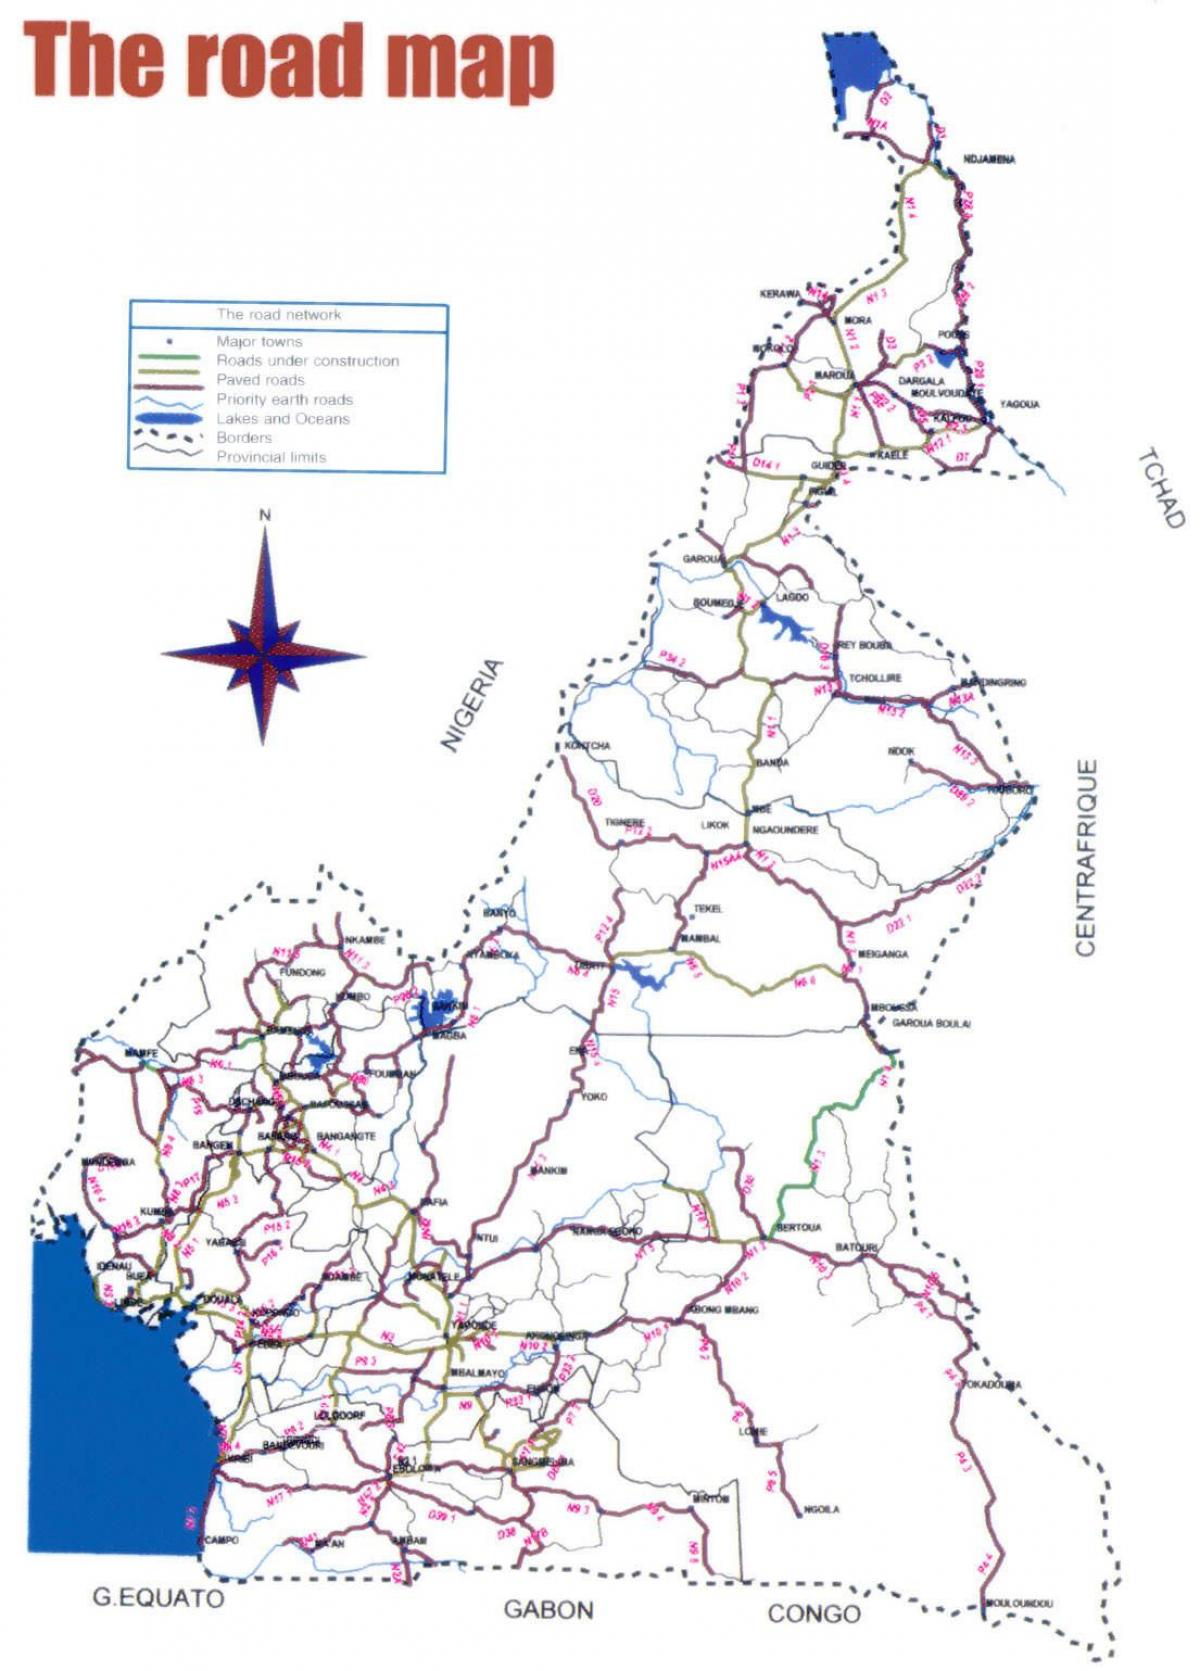 Mapa Kamerun errepidea